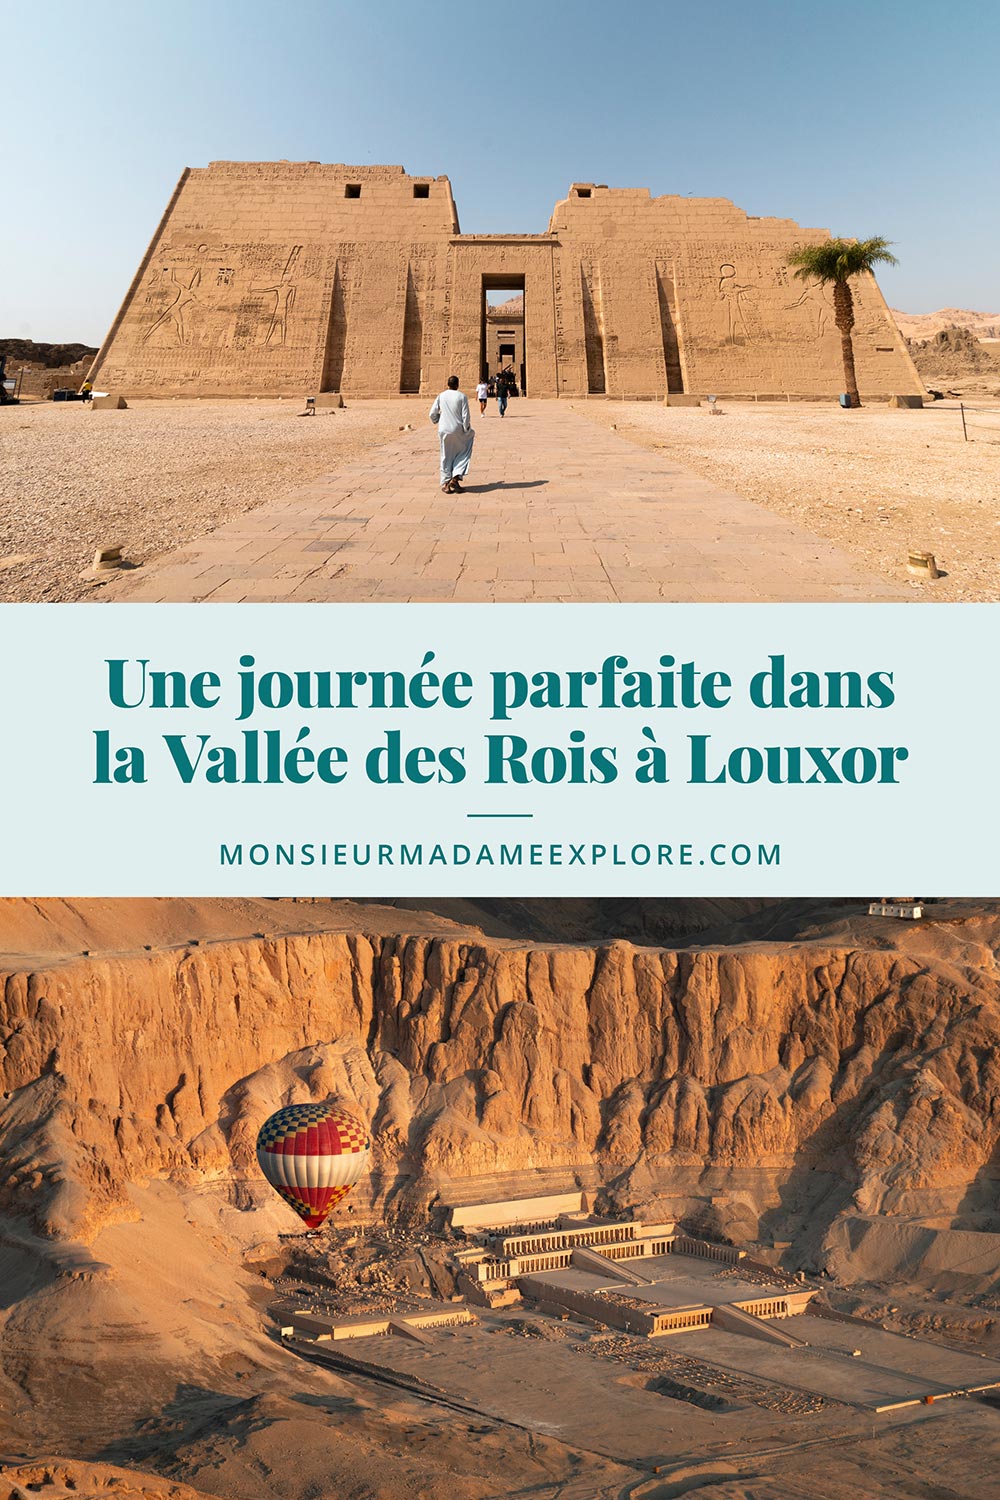 Une journée parfaite dans la Vallée des Rois à Louxor, Monsieur+Madame Explore, Blogue de voyage, Égypte / Visiting the Valley of the Kings in Luxor, Egypt